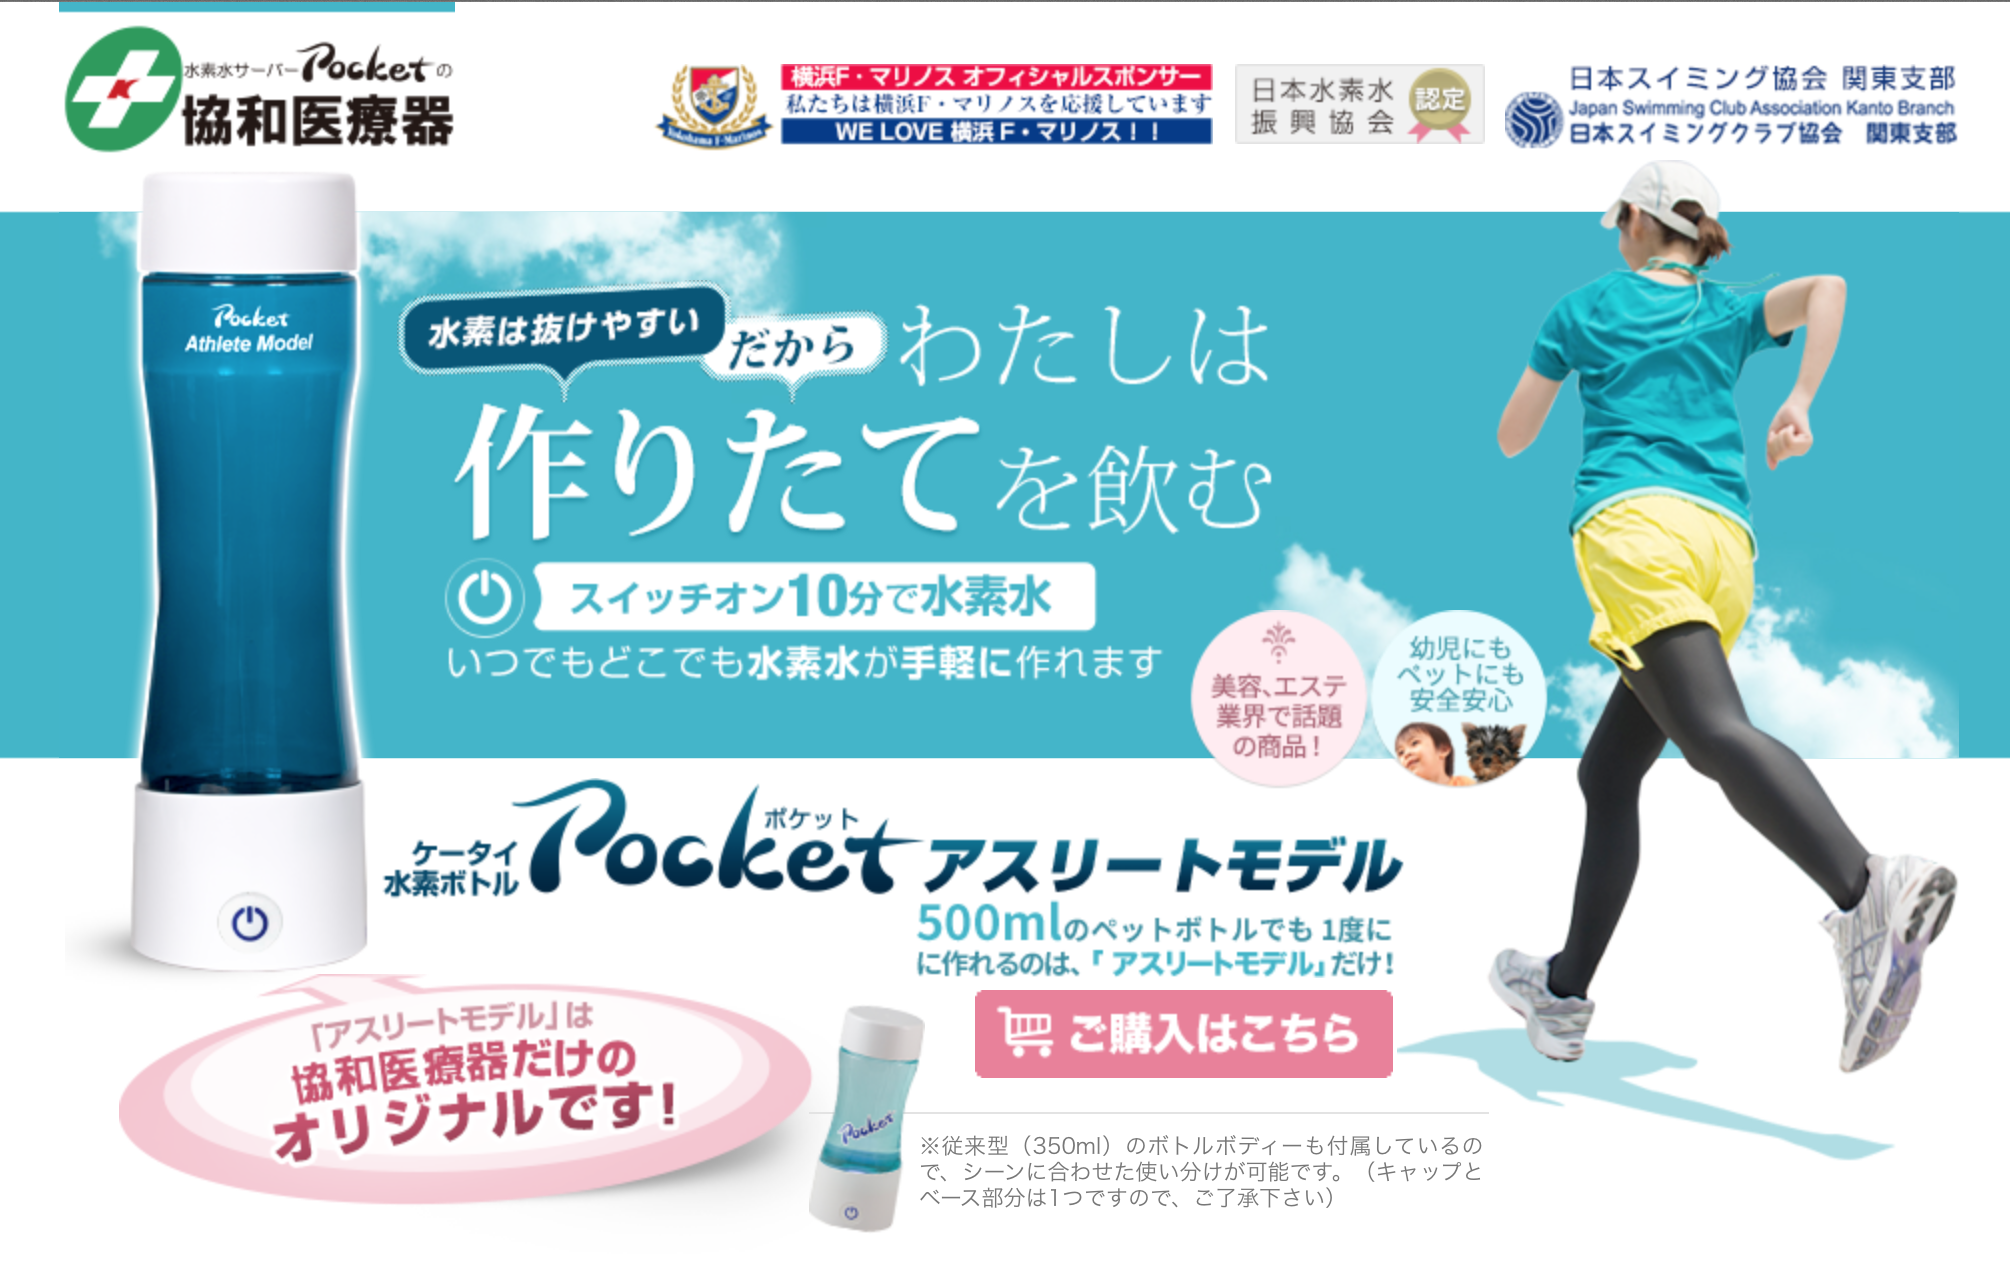 携帯型水素水サーバーpocket ポケット の協和医療器が 横浜f マリノス とオフィシャルスポンサー契約を締結 株式会社 協和医療器のプレスリリース